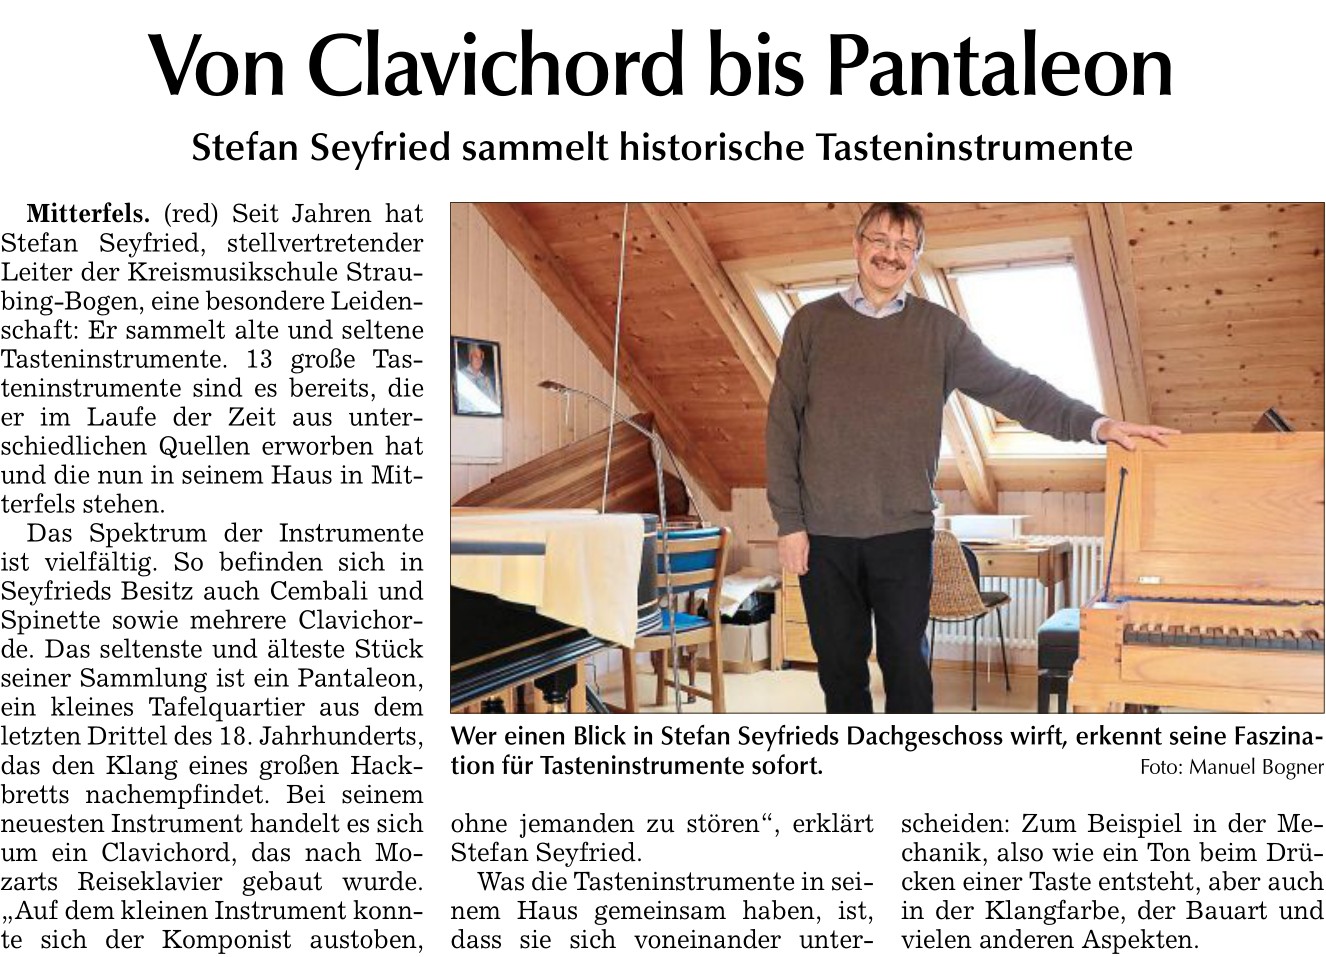 Stefan Seyfried sammelt historische Tasteninstrumente